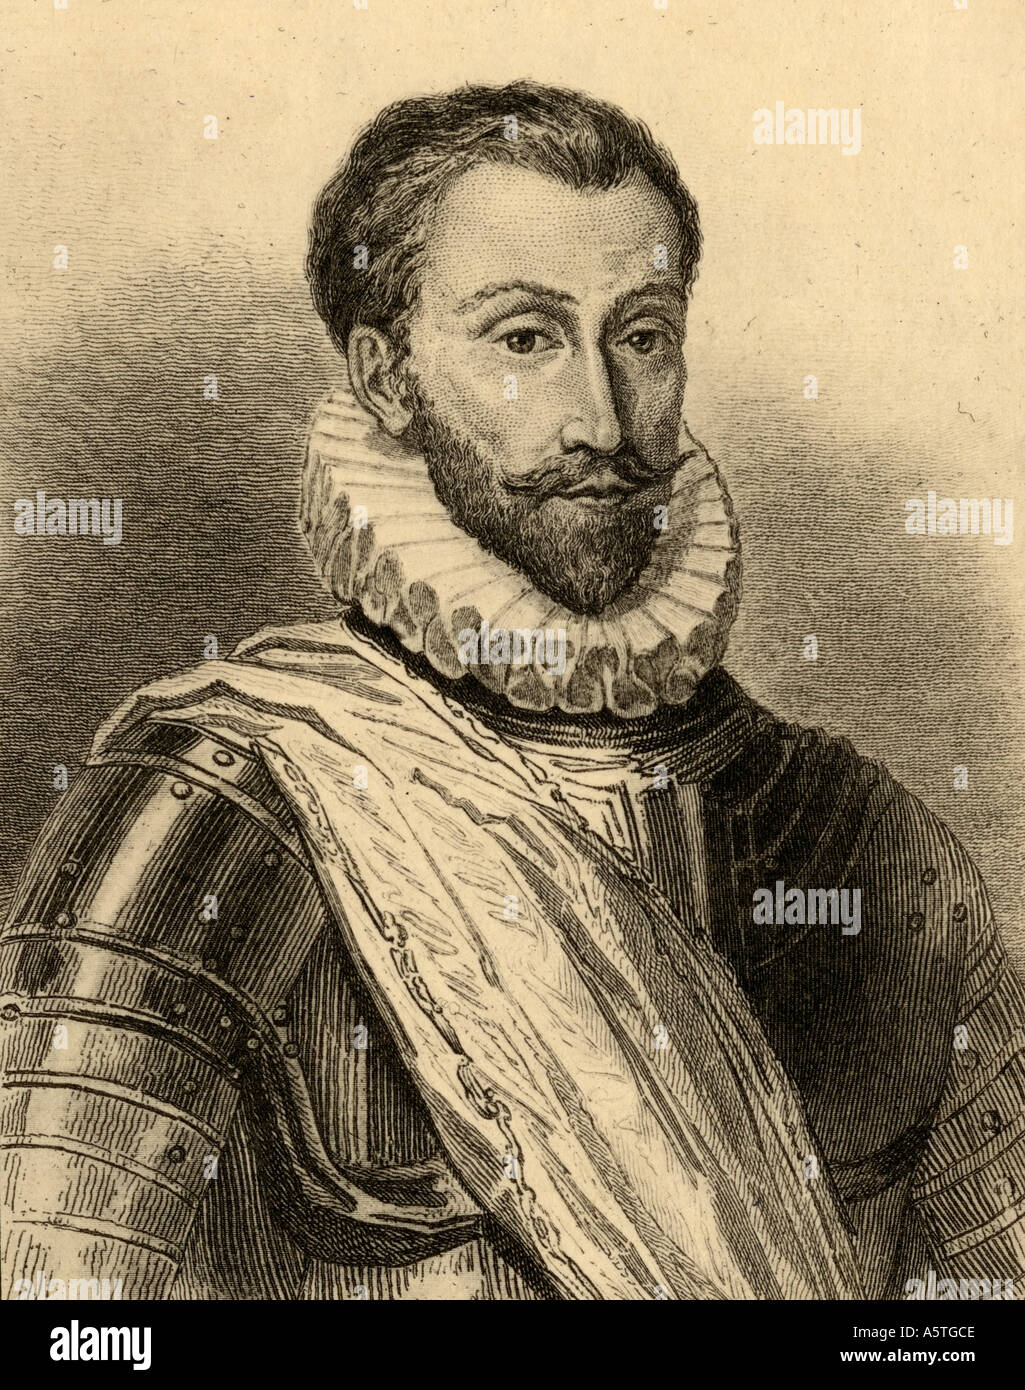 François de la Noue, appelé Bras-de-fer, 1531 - 1591. Le capitaine Huguenot dans les guerres de religion. Banque D'Images